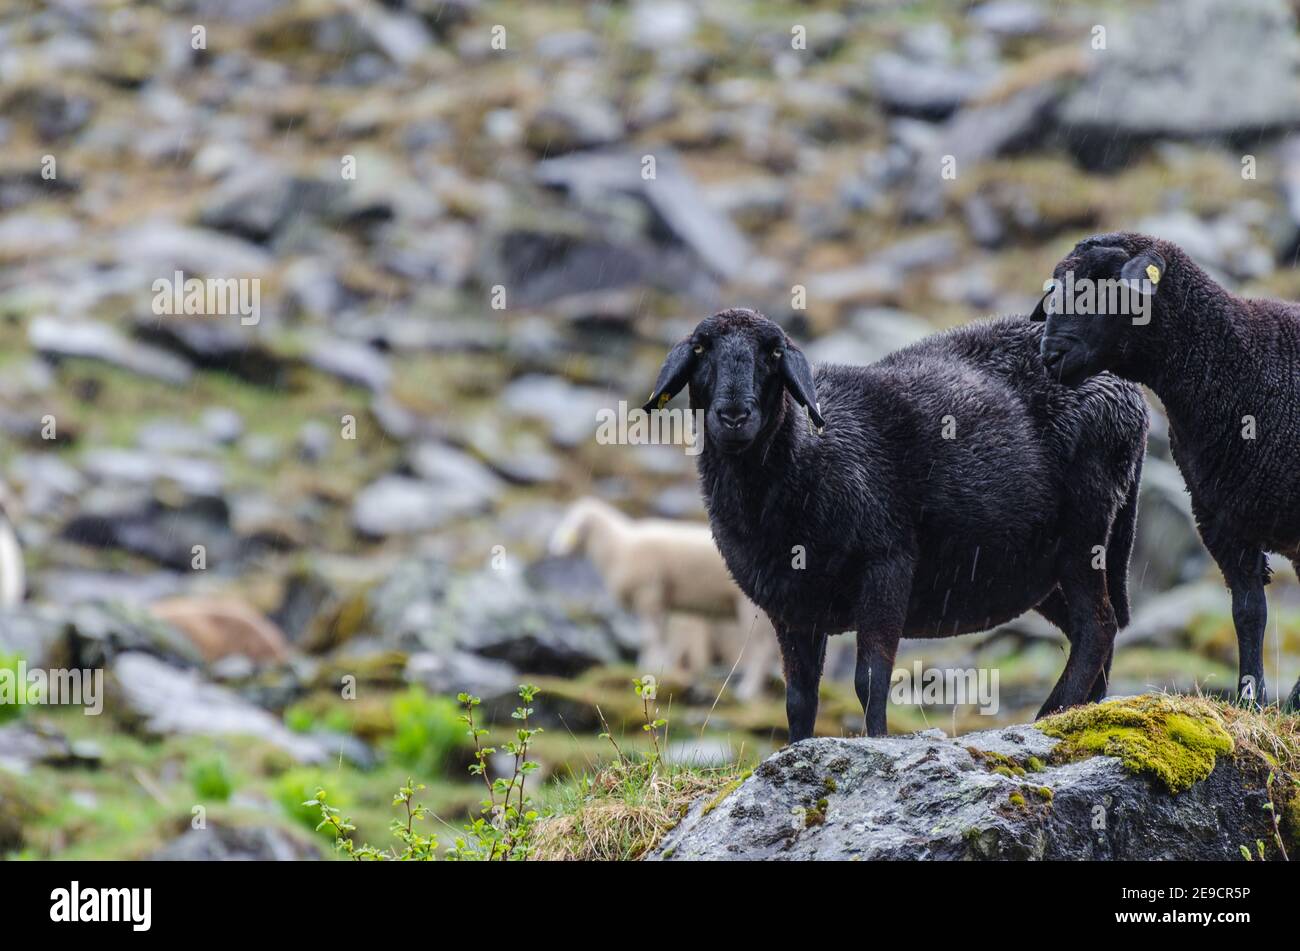 black sheep standing at rain at the rock Stock Photo